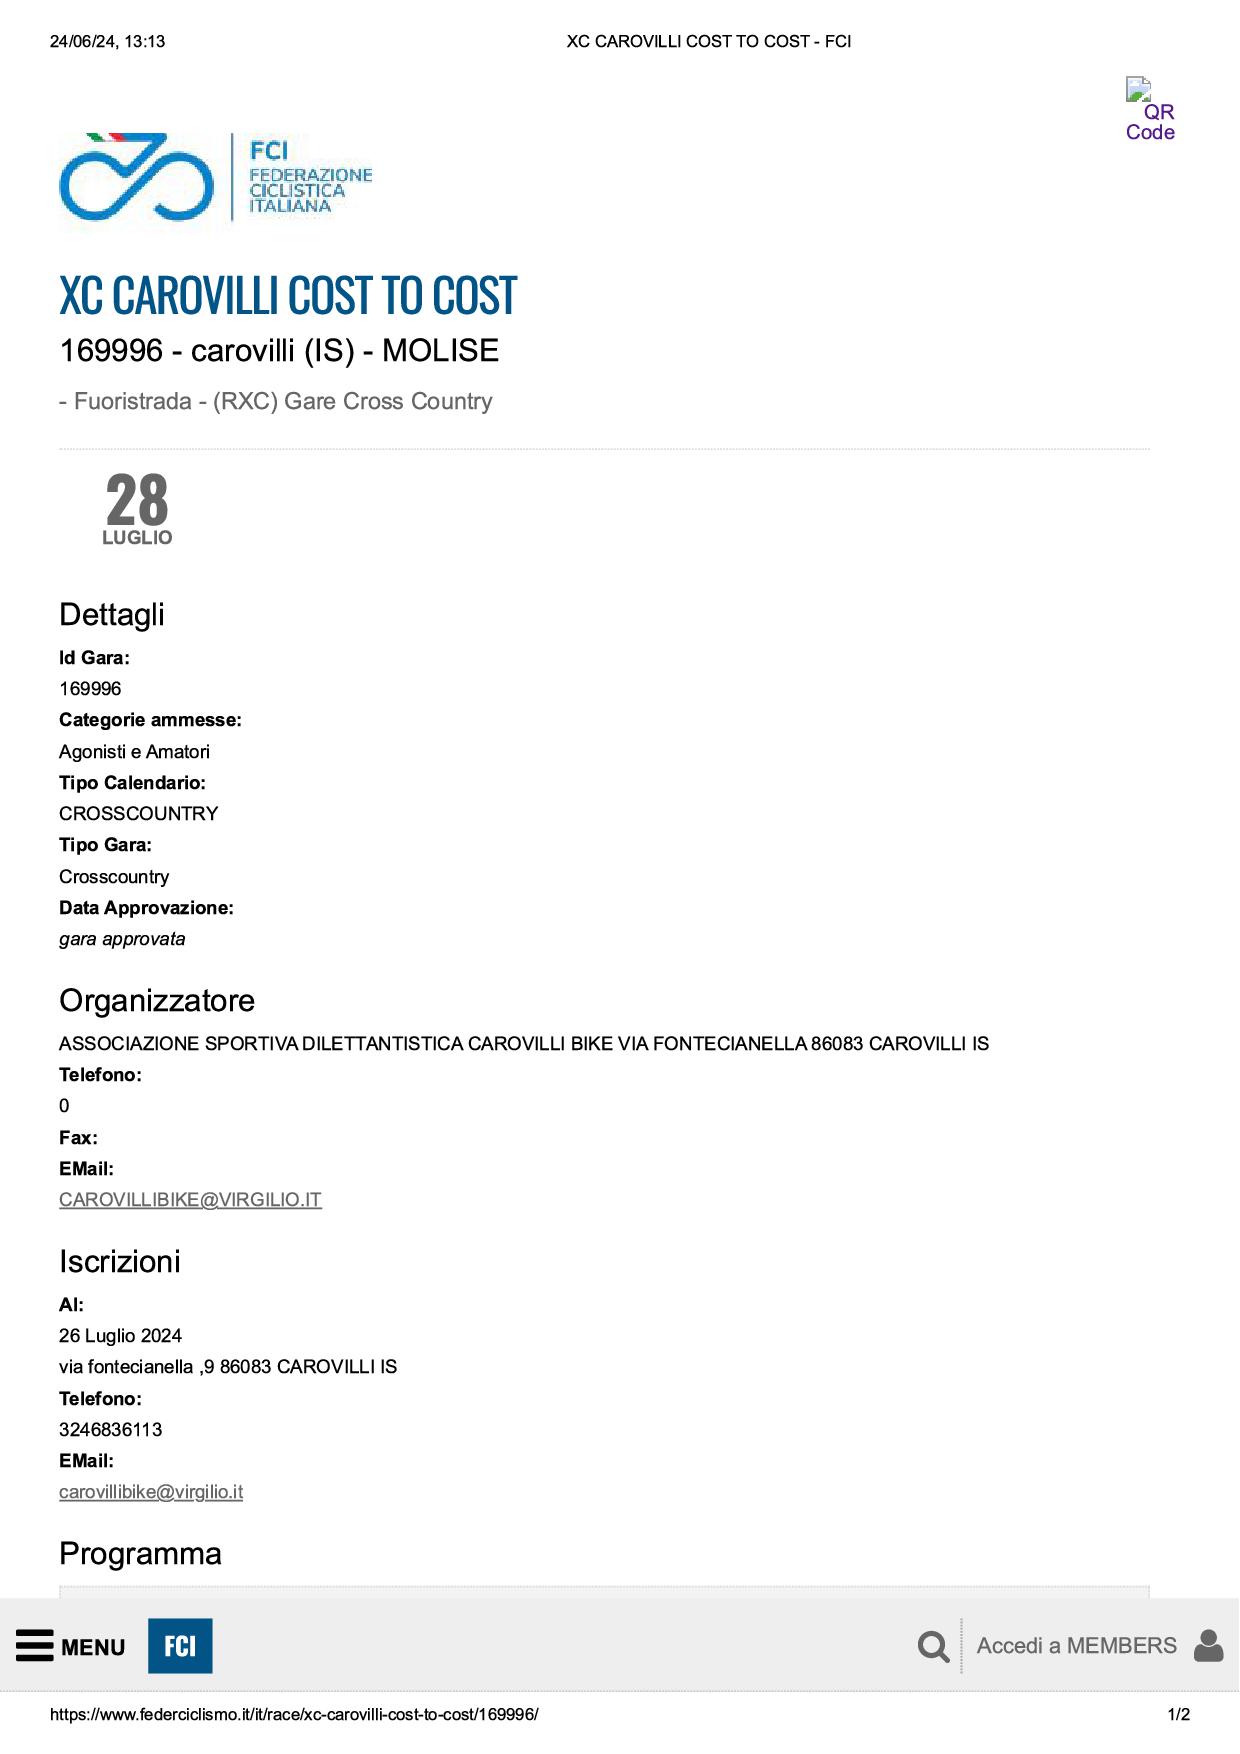 XC CAROVILLI COST TO COST FCI1